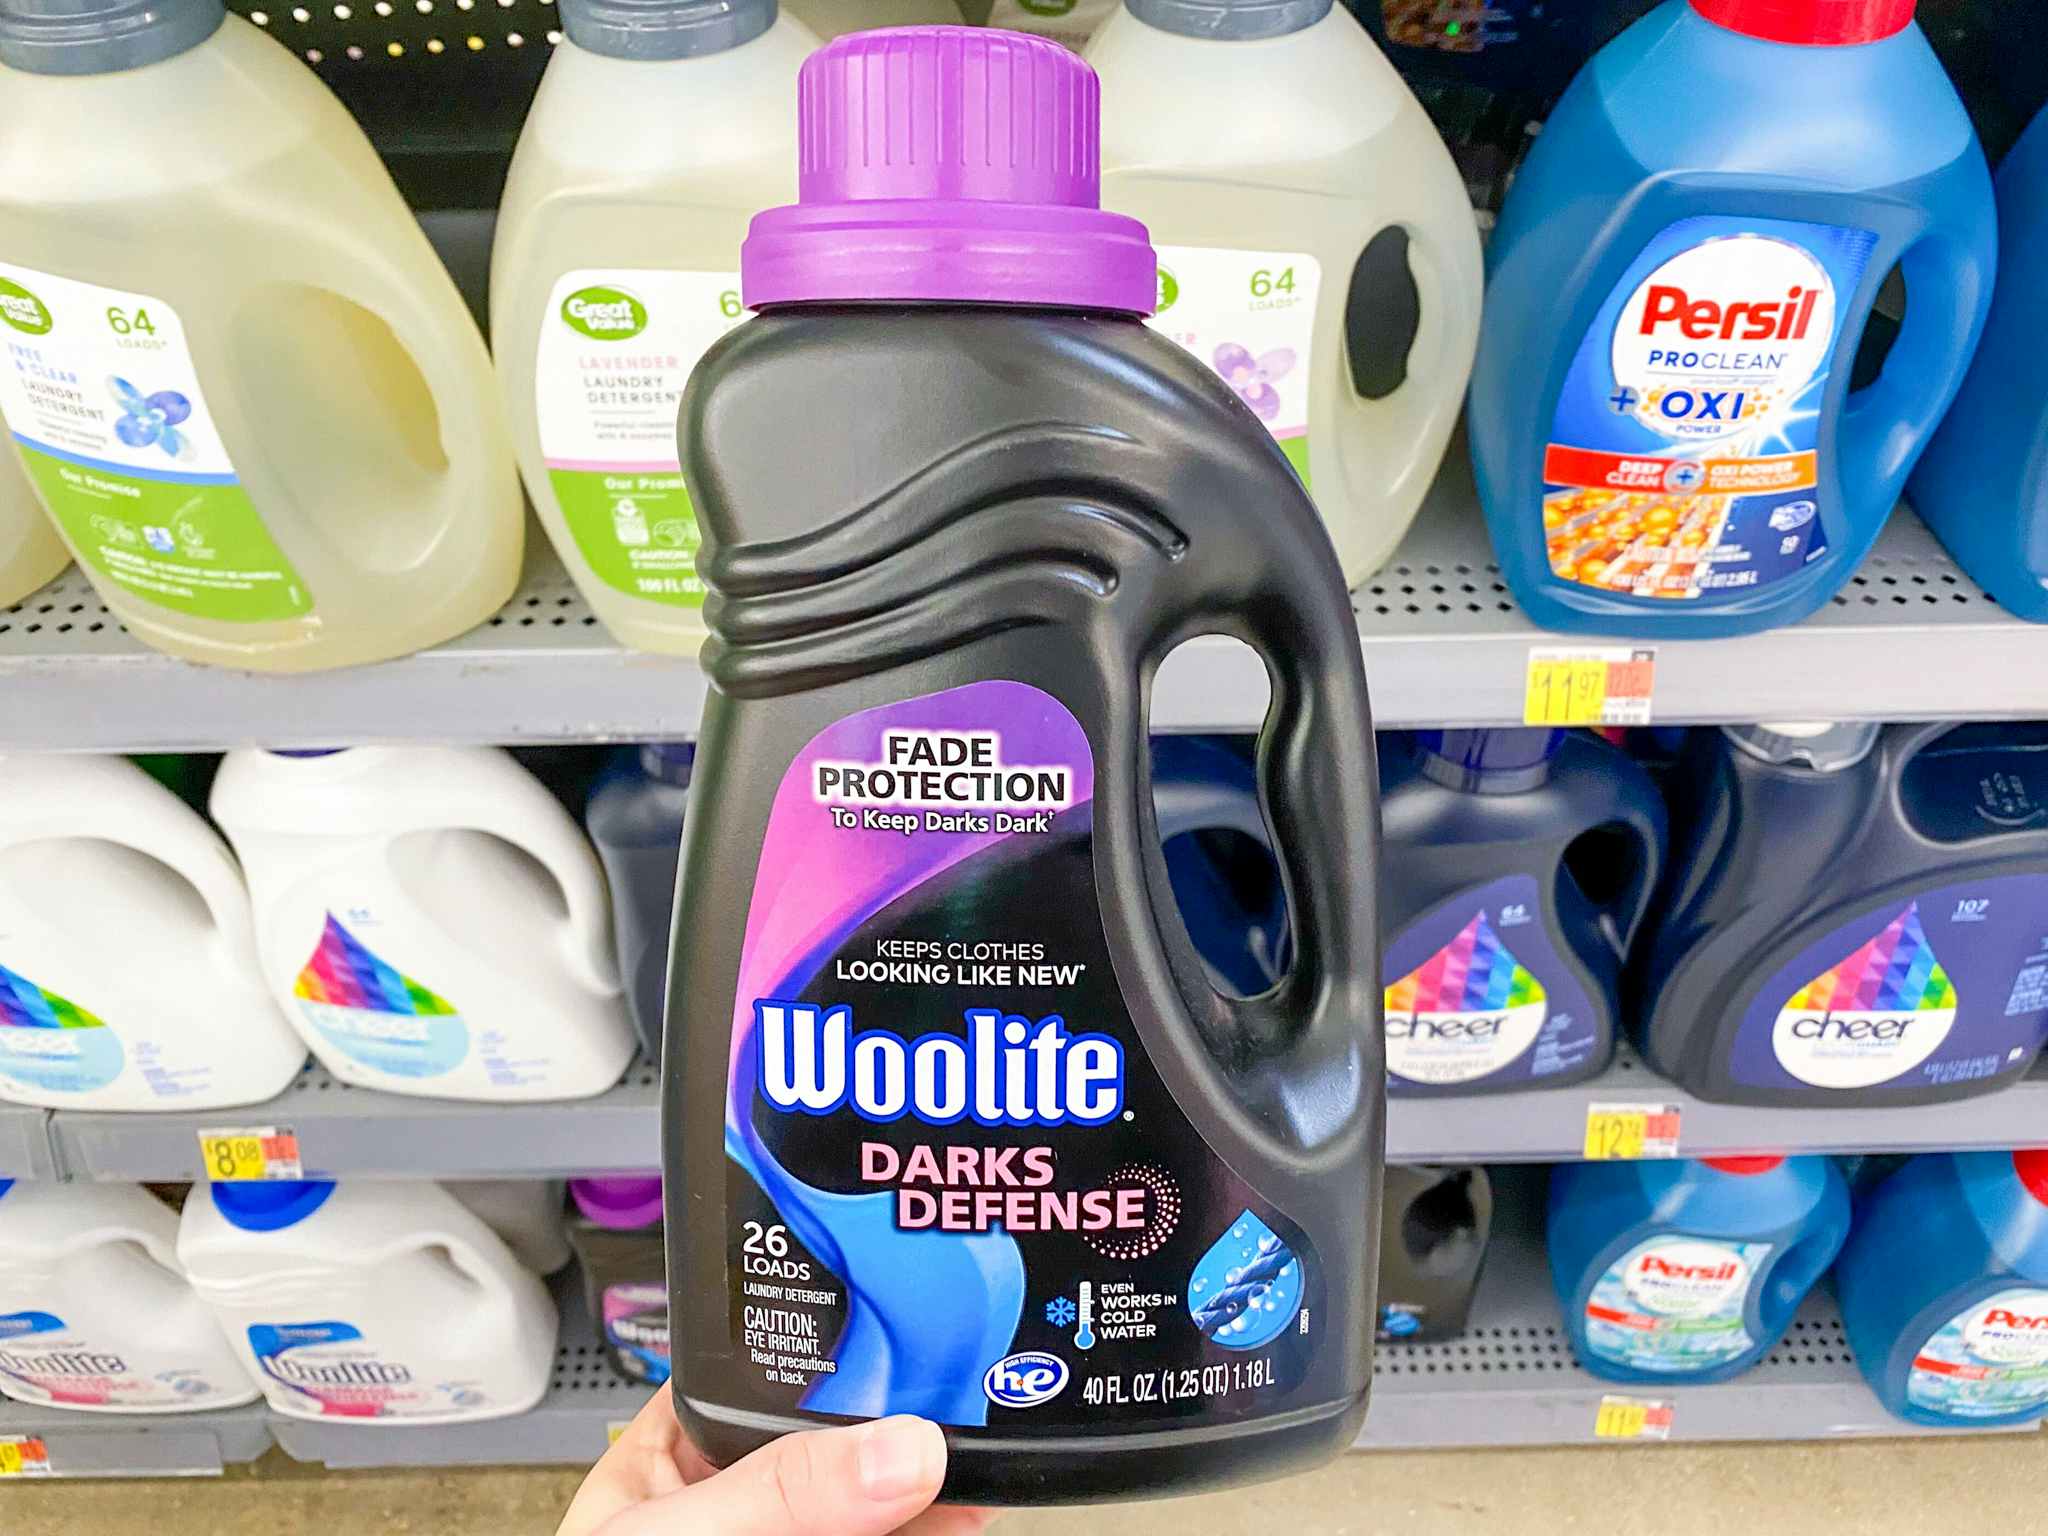 Wolite Darks Defense Liquid Laundry Detergent at Walmart